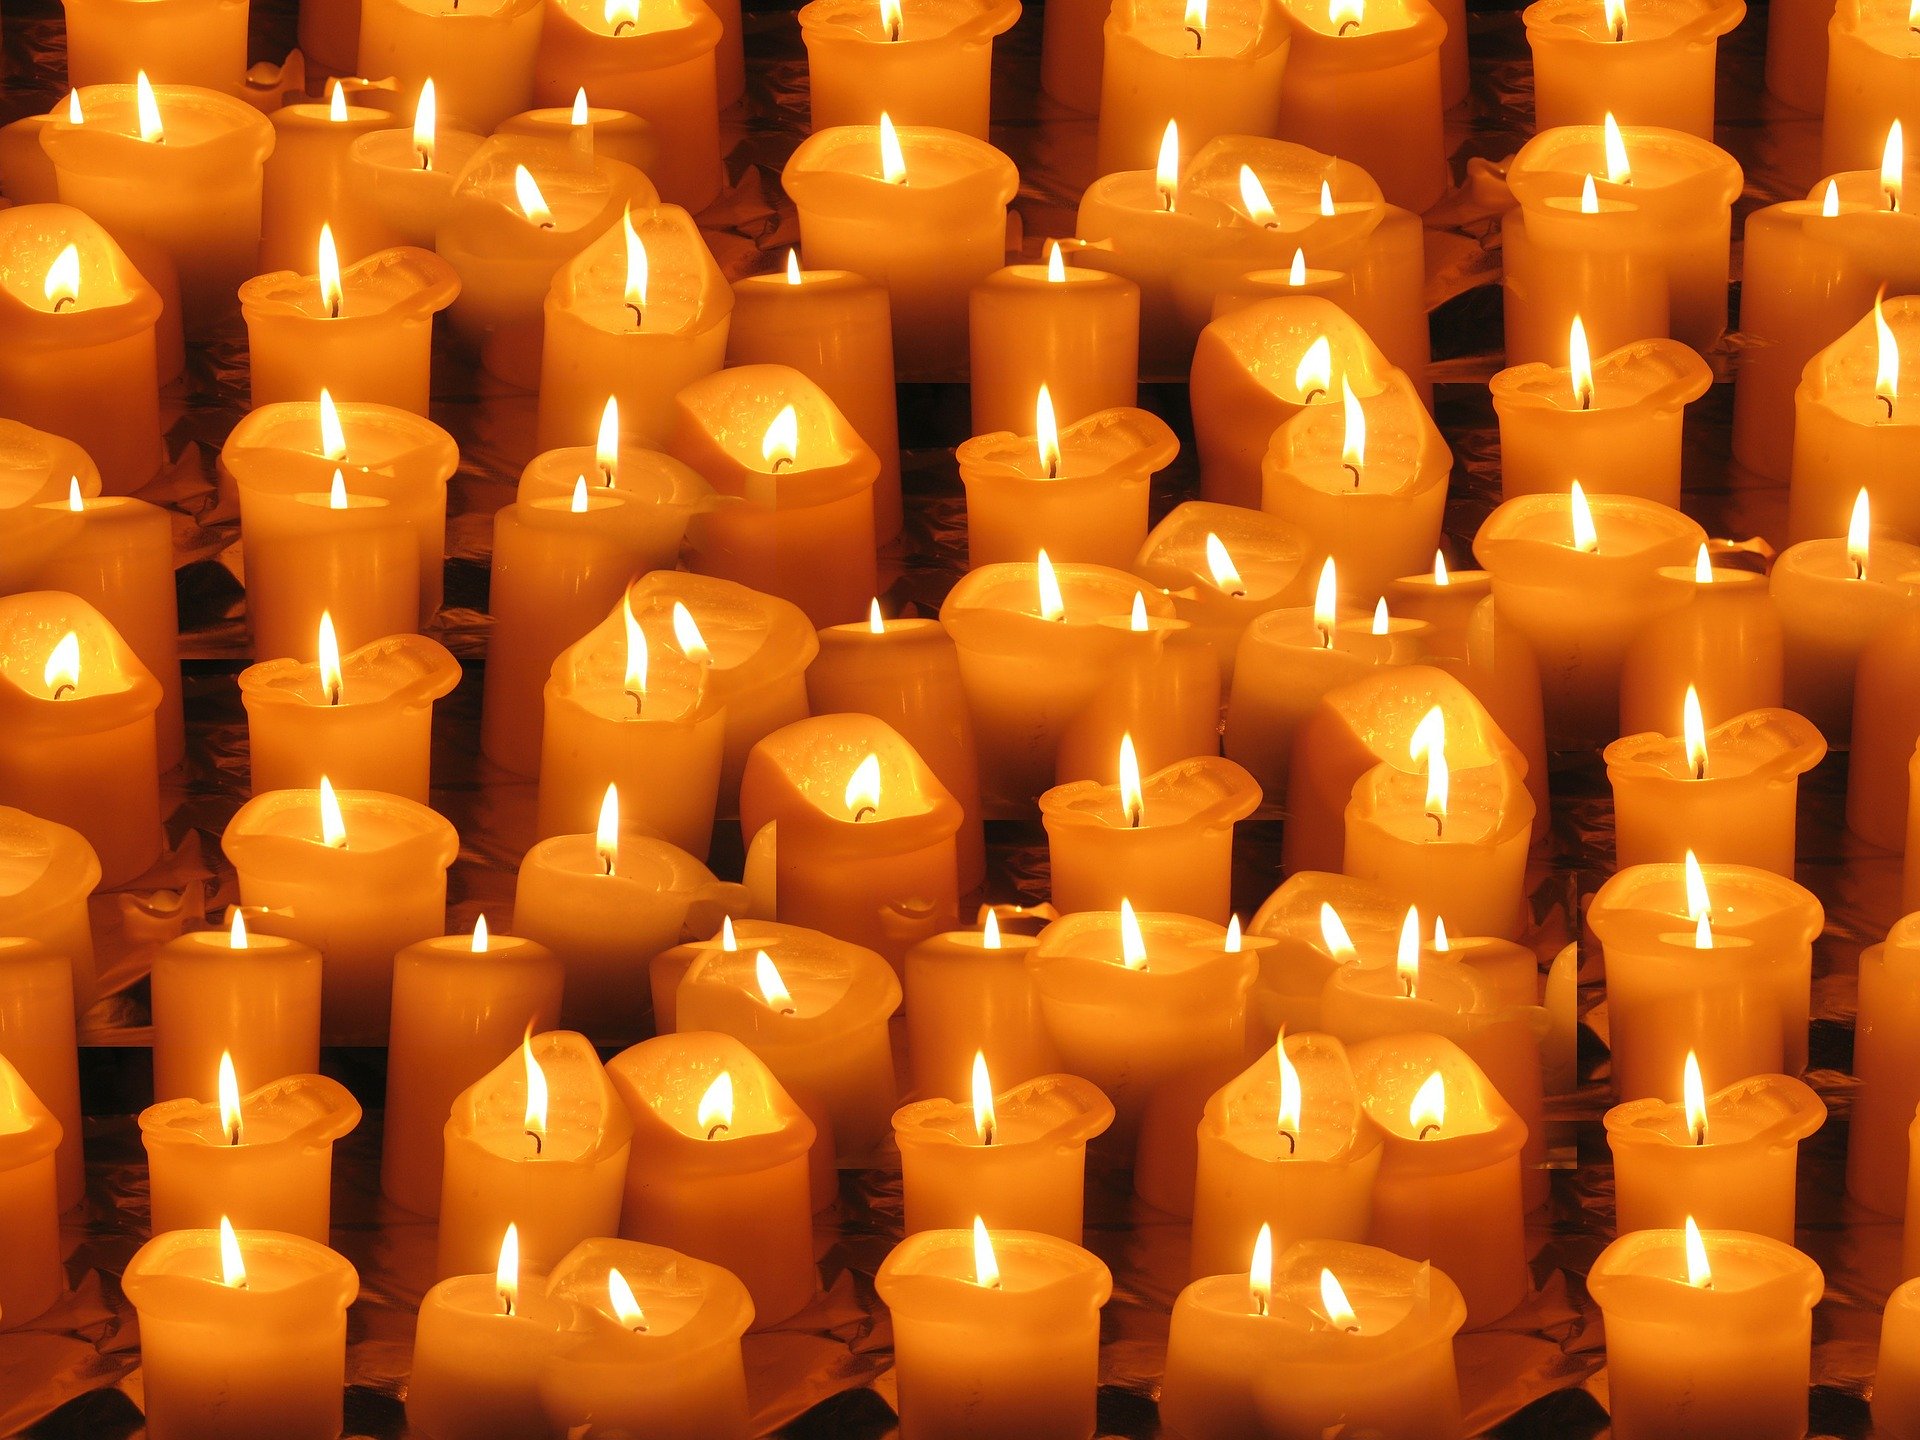 Foto: Brennende Kerzen - dicht an dicht